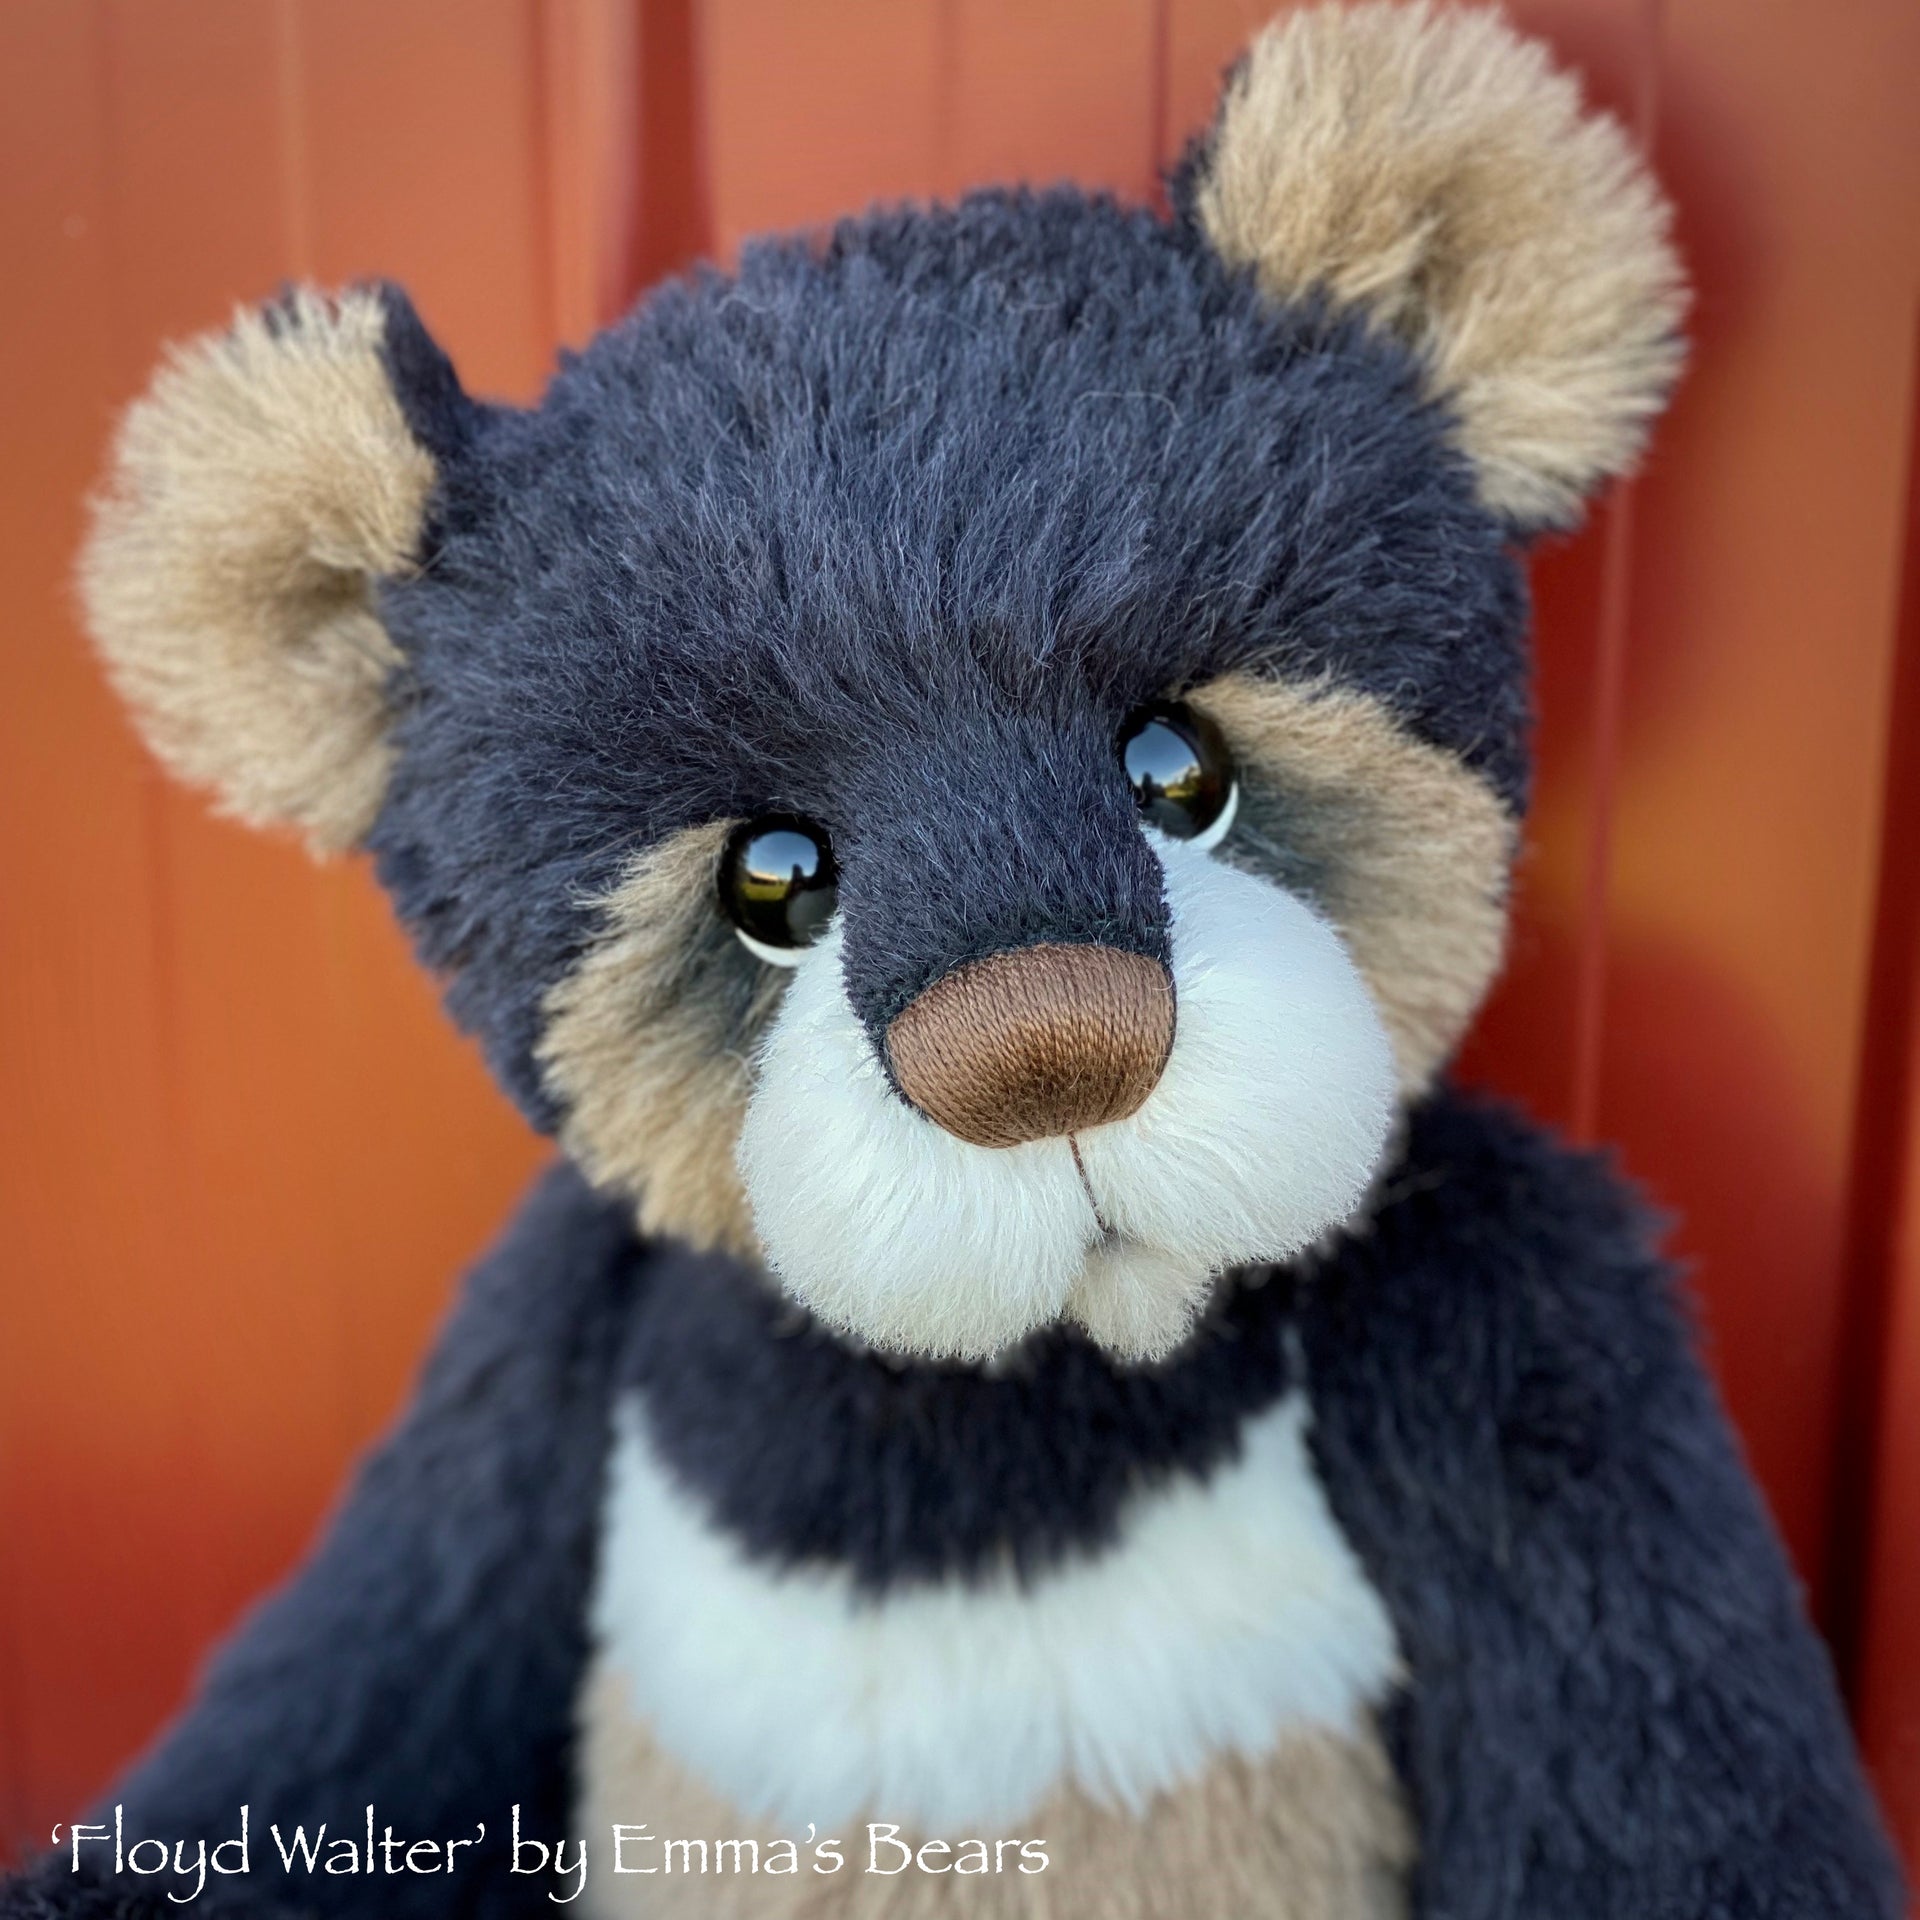 Floyd Walter - 18" Baby Artist Bear by Emma's Bears - OOAK